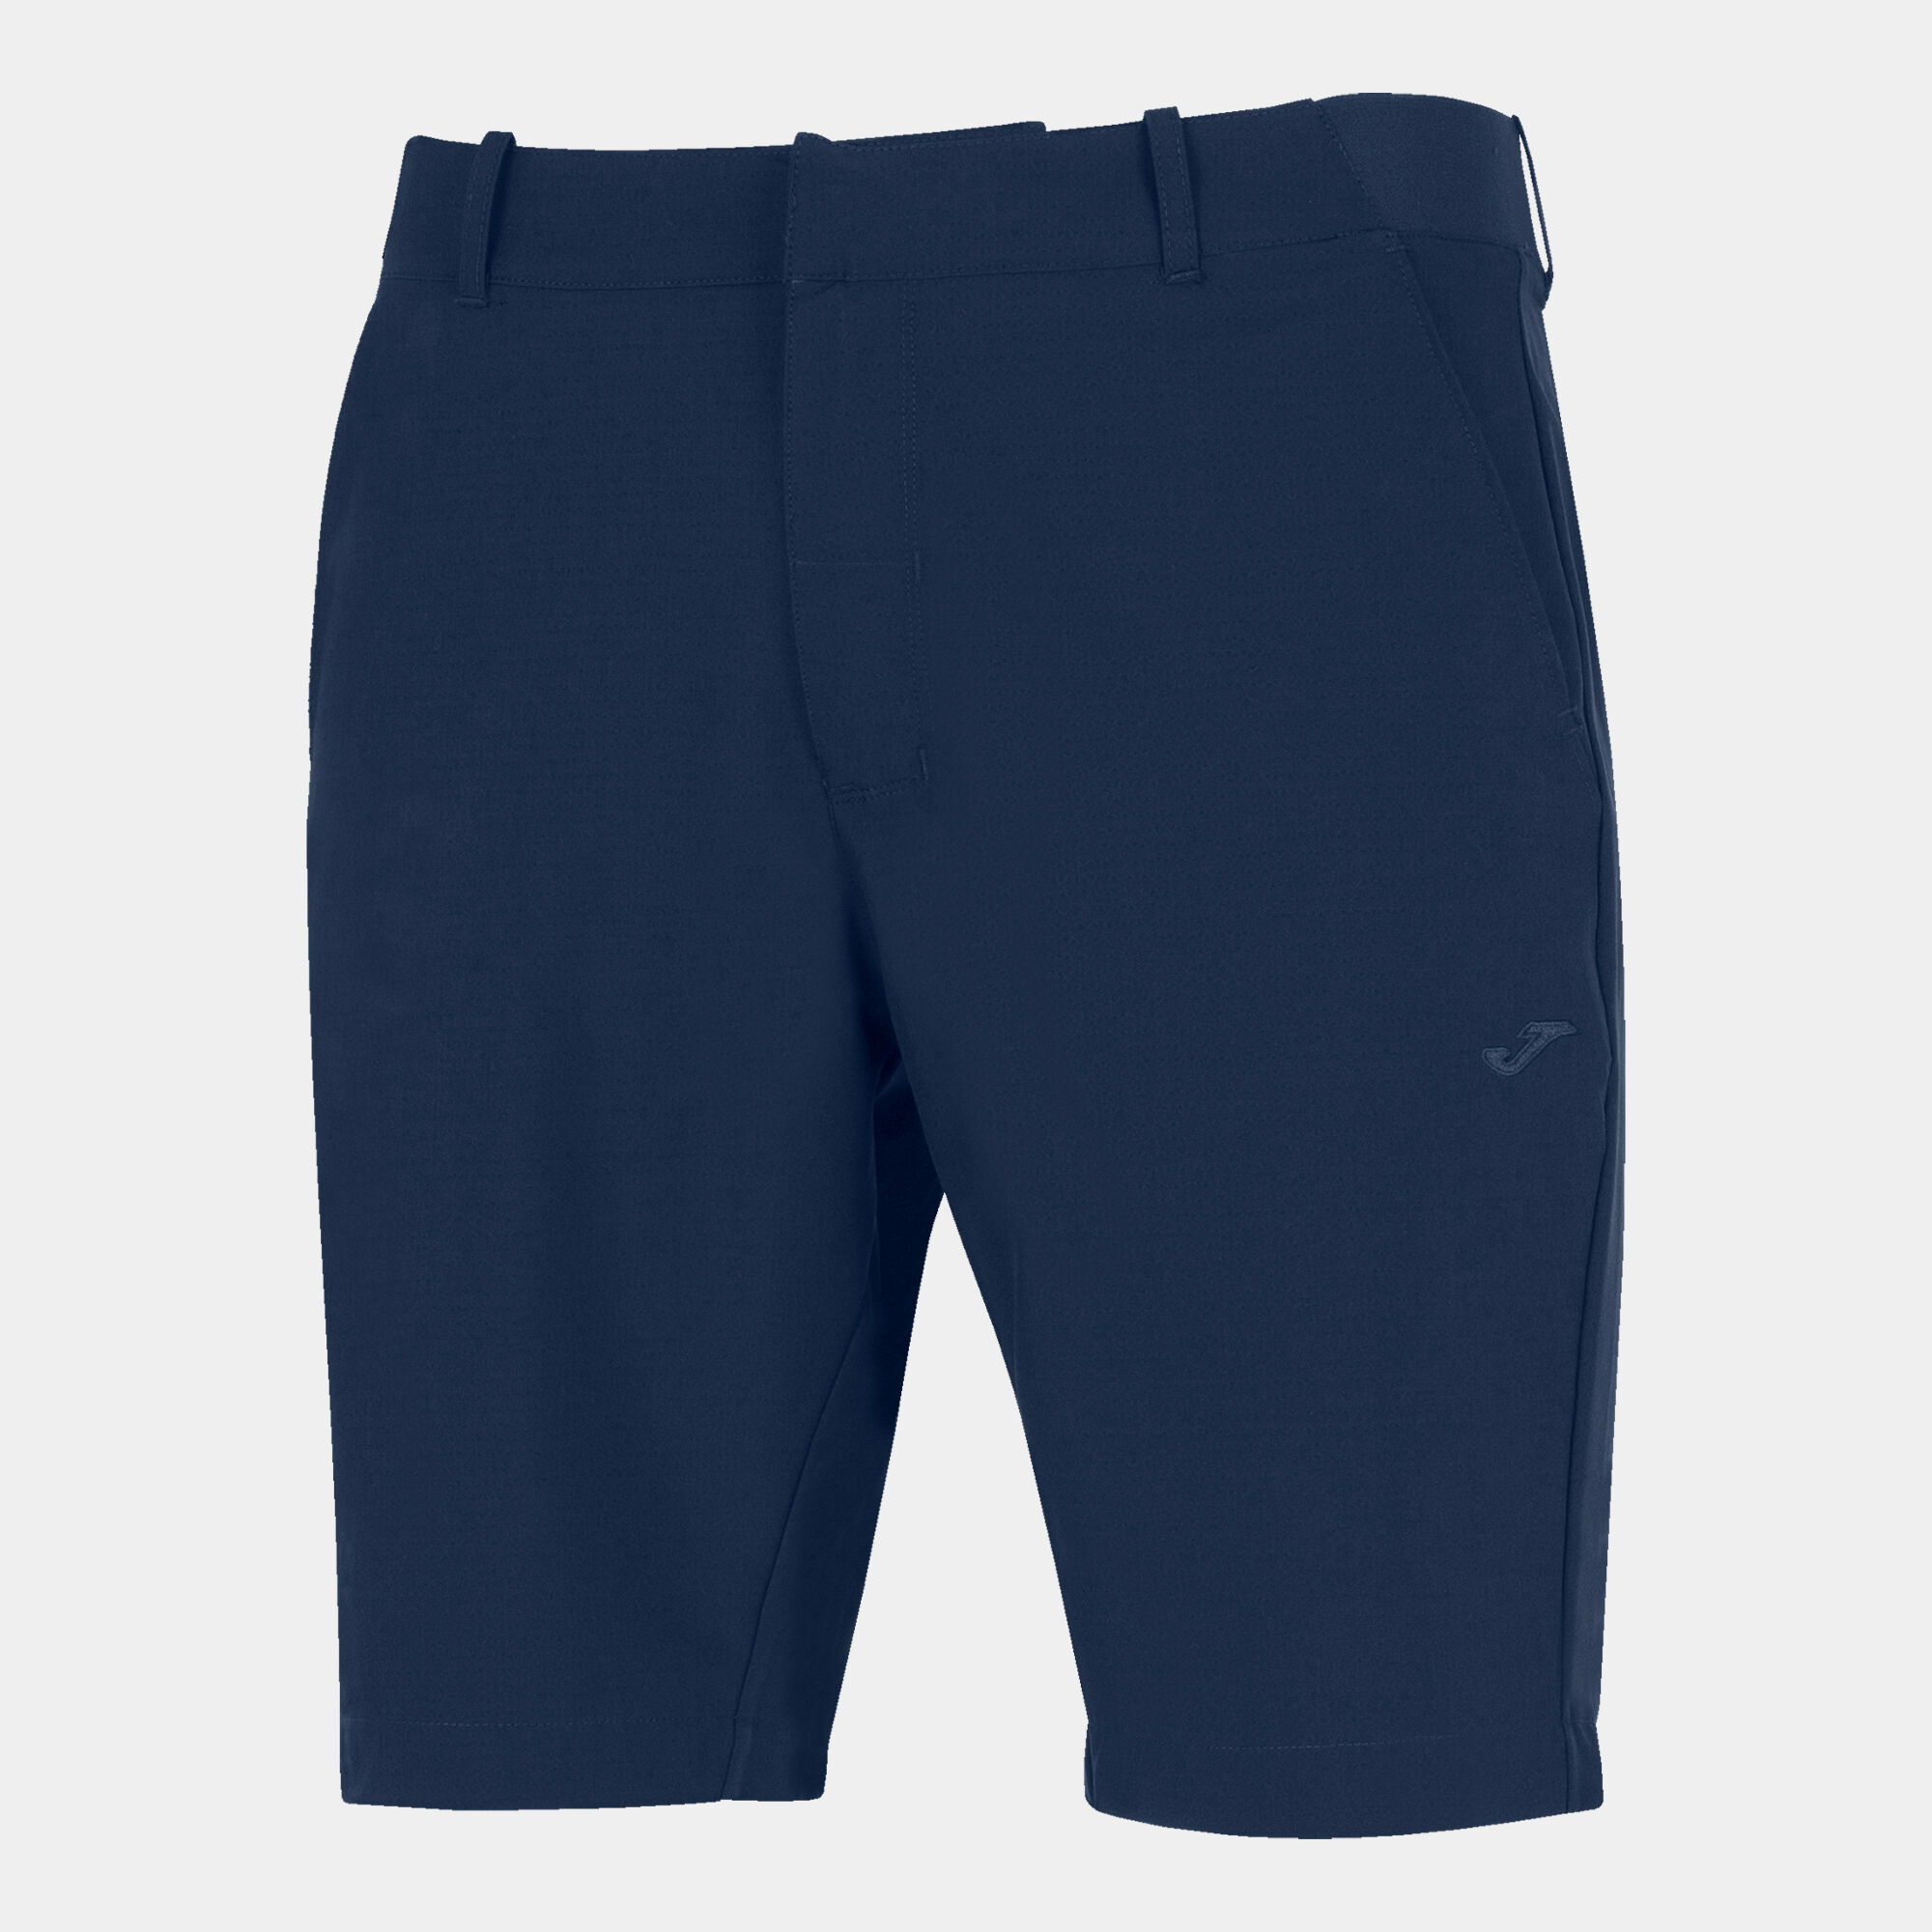 Bermuda shorts man Pasarela III navy blue